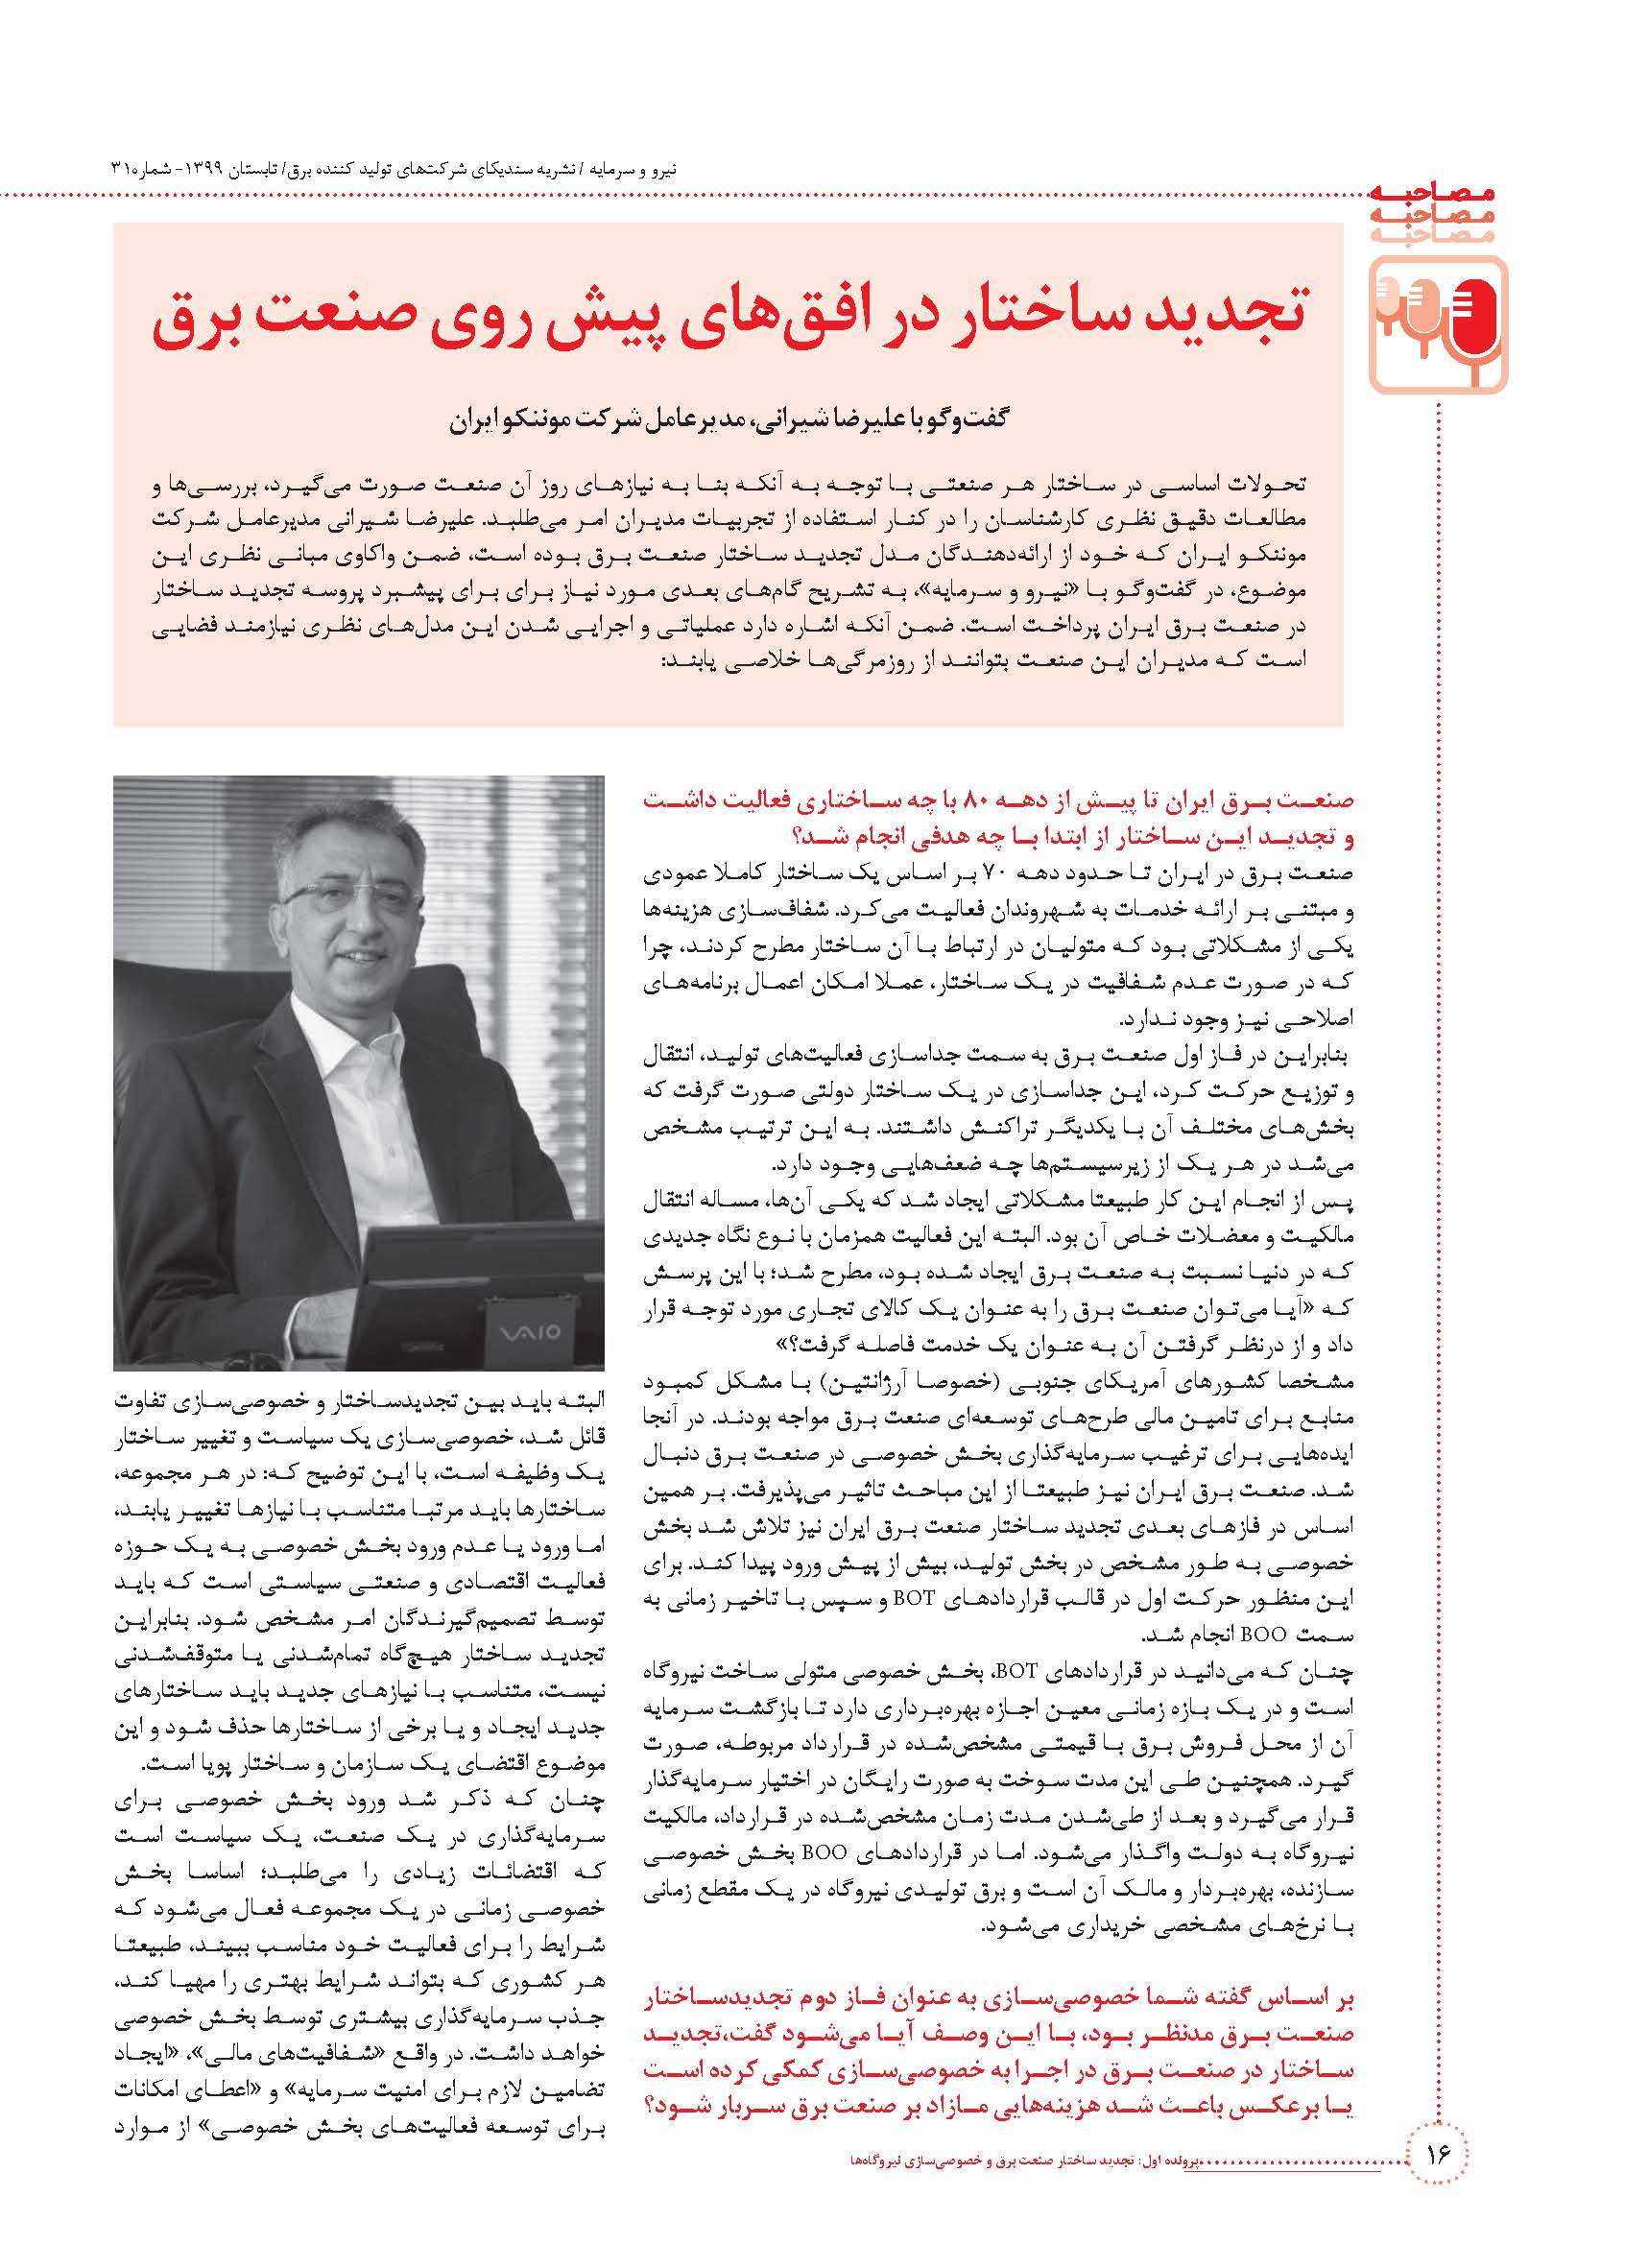  مصاحبه با علیرضا شیرانی، مدیرعامل موننکو ایران با موضوع "تجدید ساختار در افق های پیش روی صنعت برق" در فصلنامه نیرو و سرمایه  